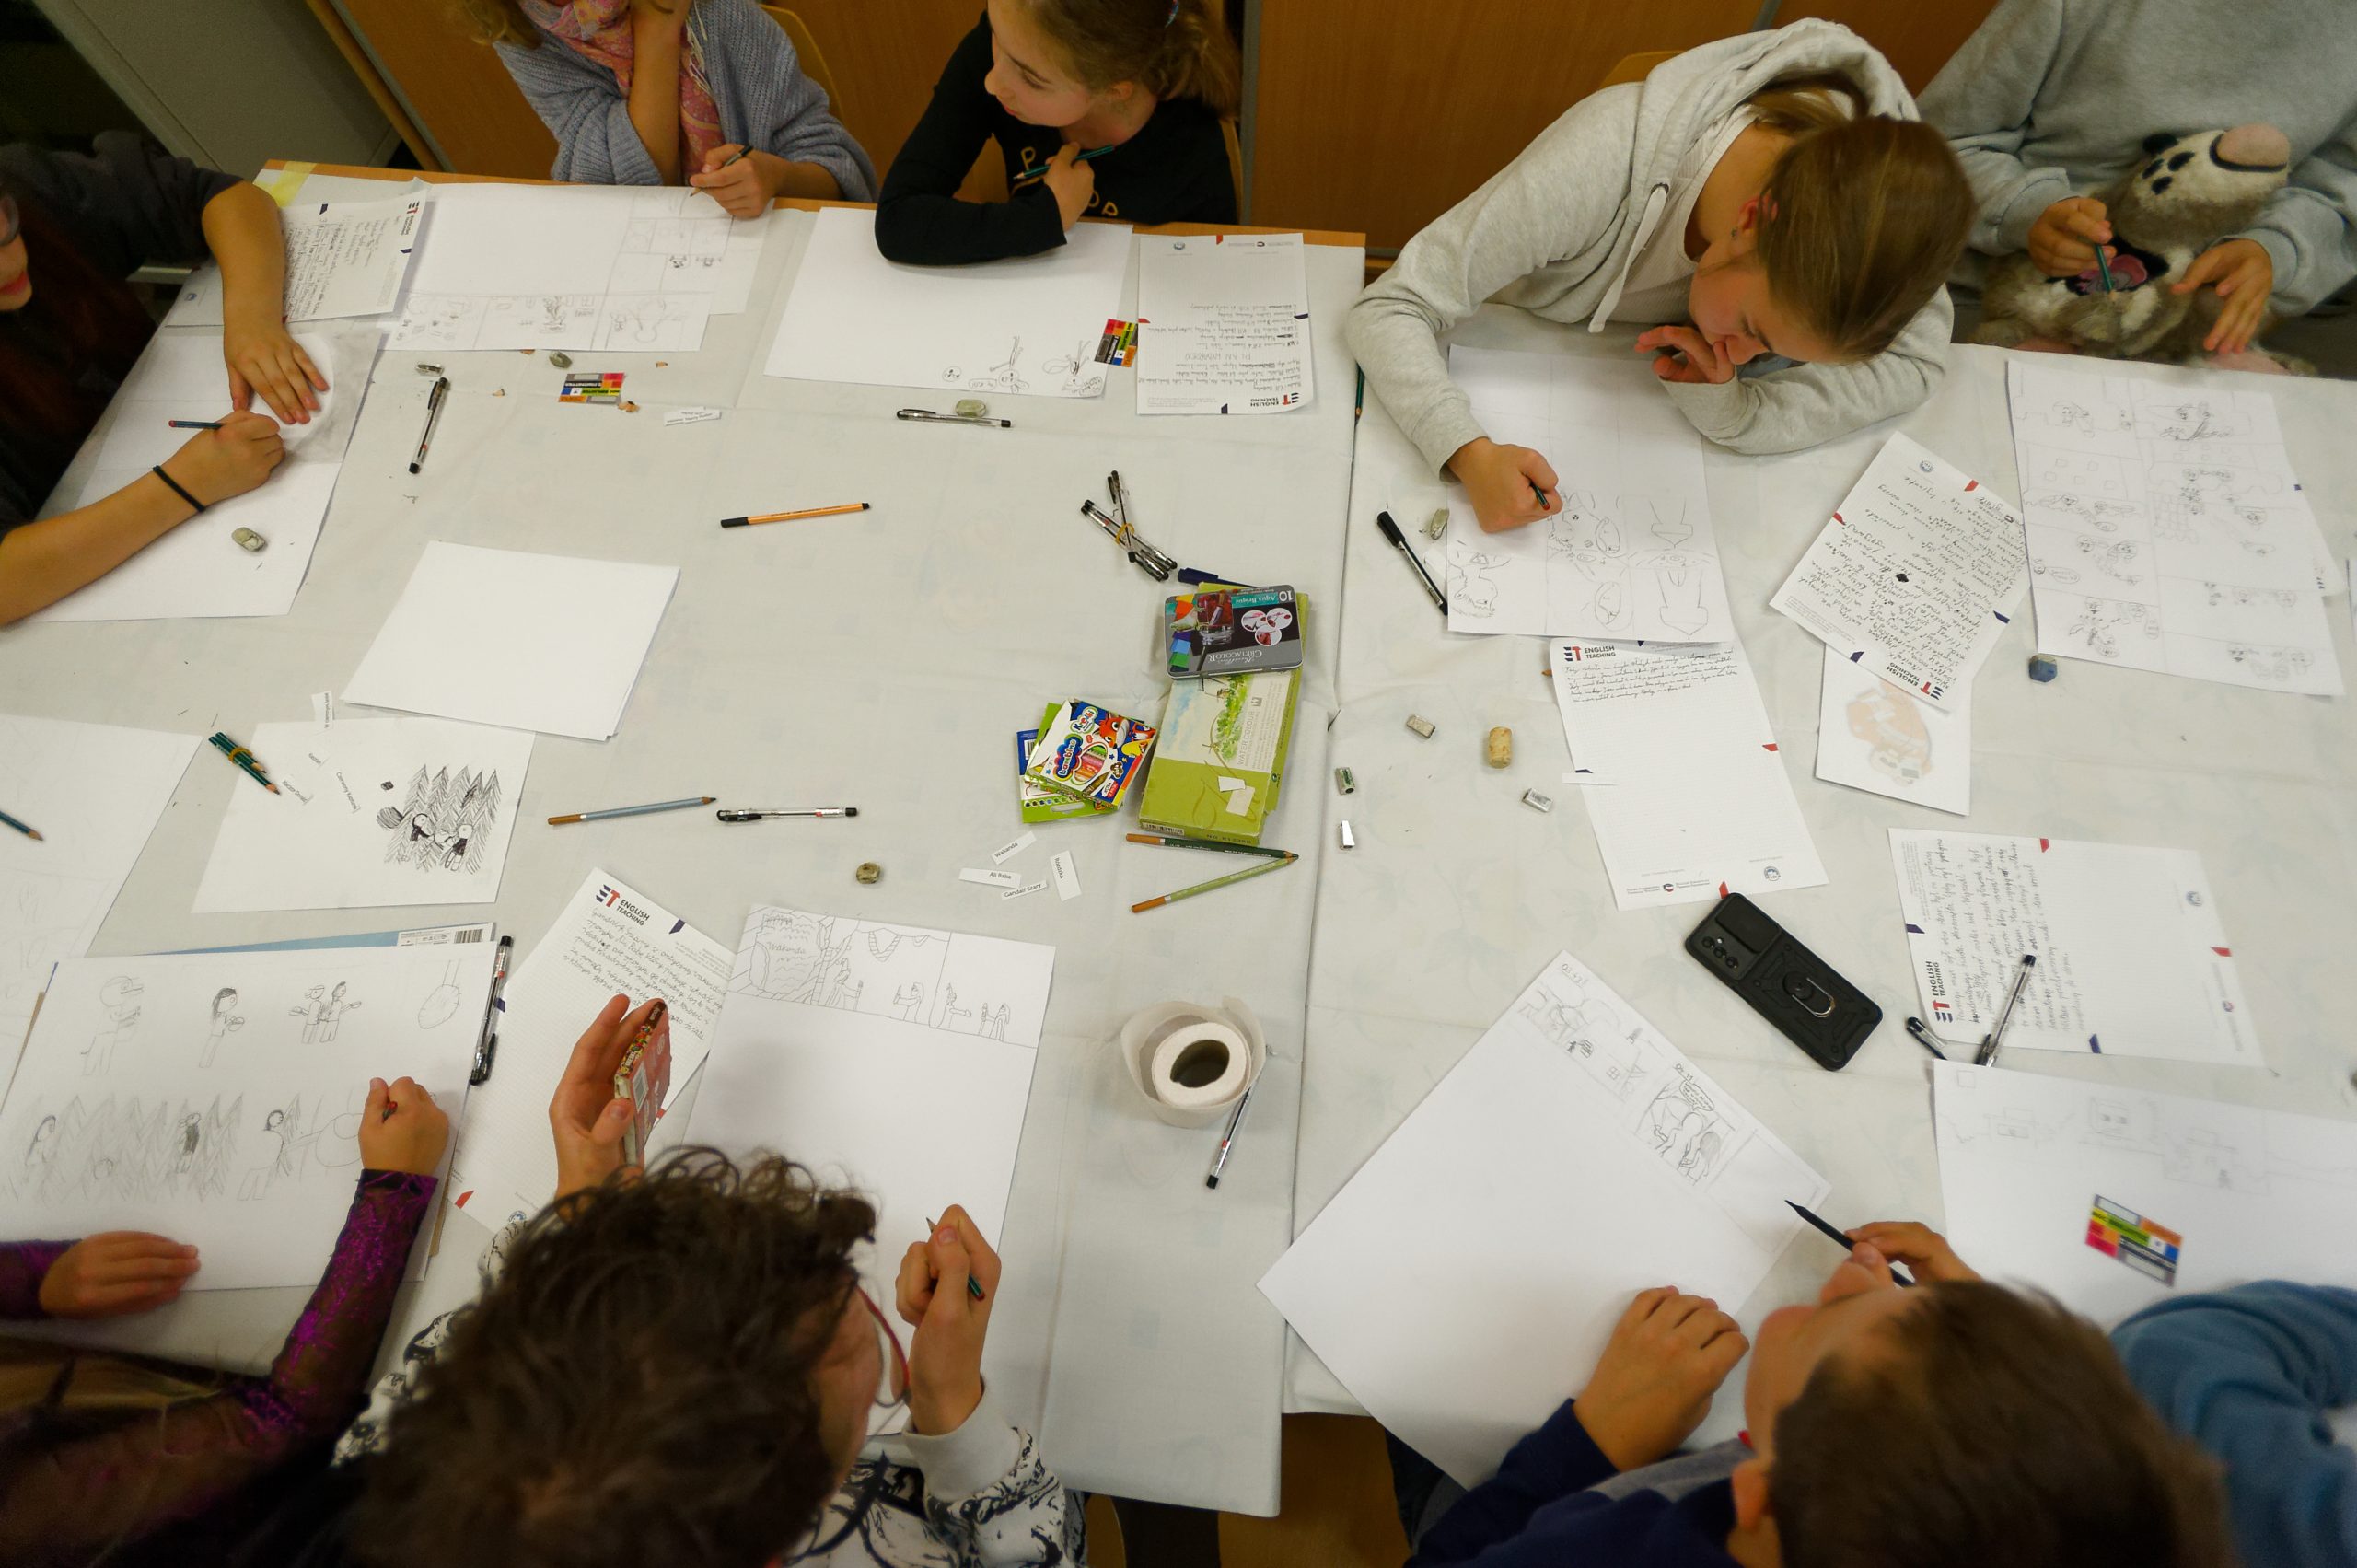 Widok z góry na grupę dzieci siedzących przy stole i rysujących na białych kartkach. Między kartkami leżą przybory plastyczne.